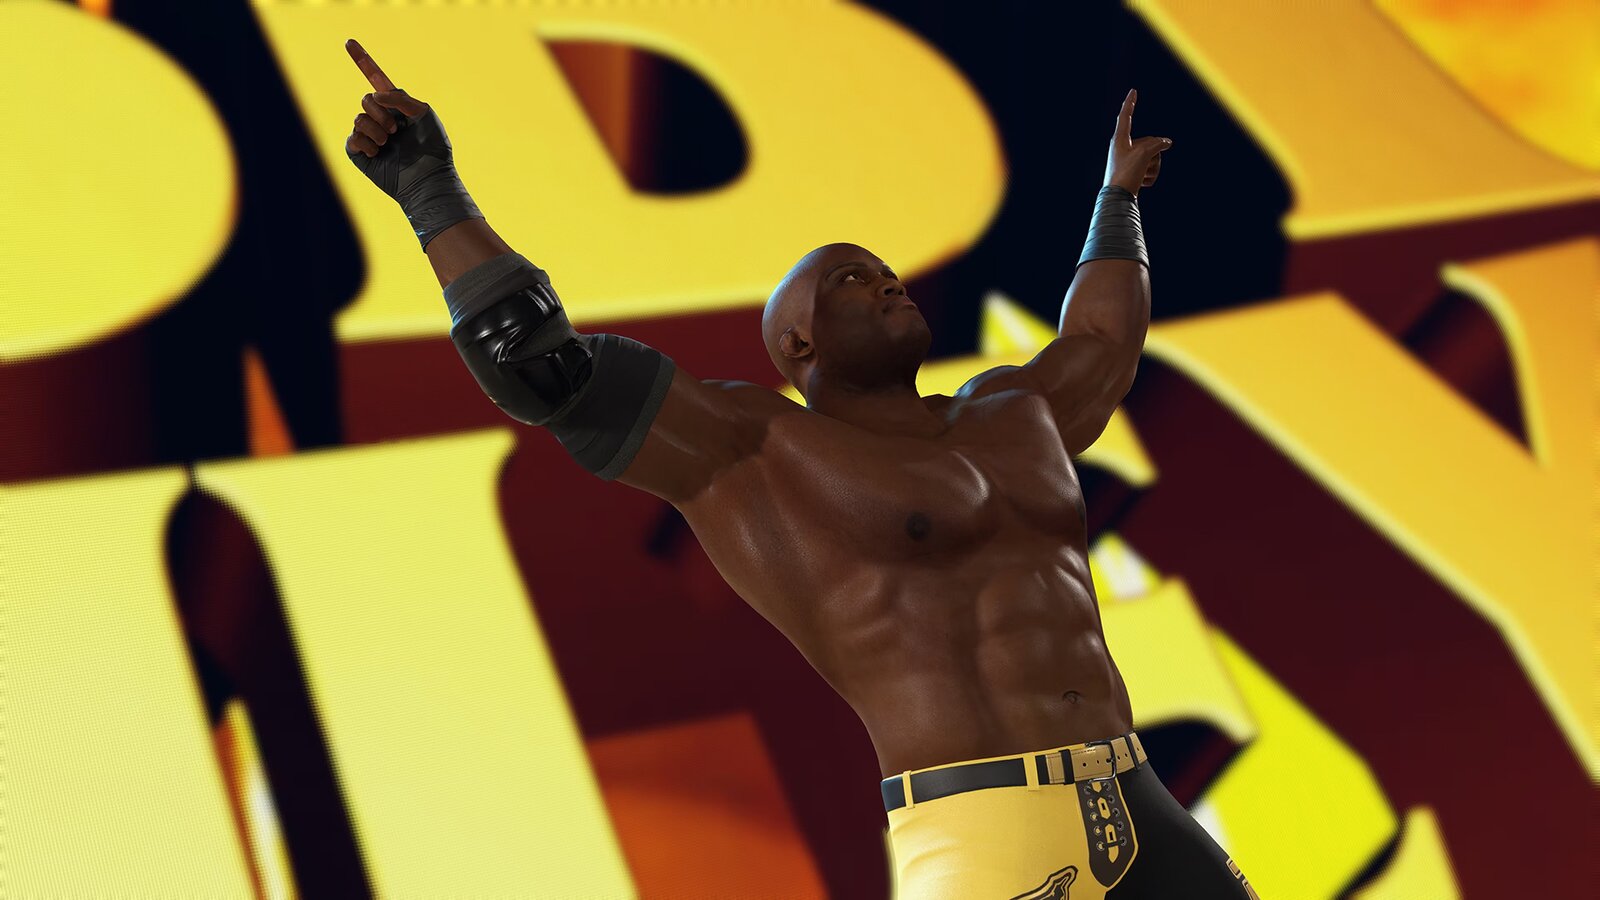 WWE 2K23 - Cross-Gen Digital Edition